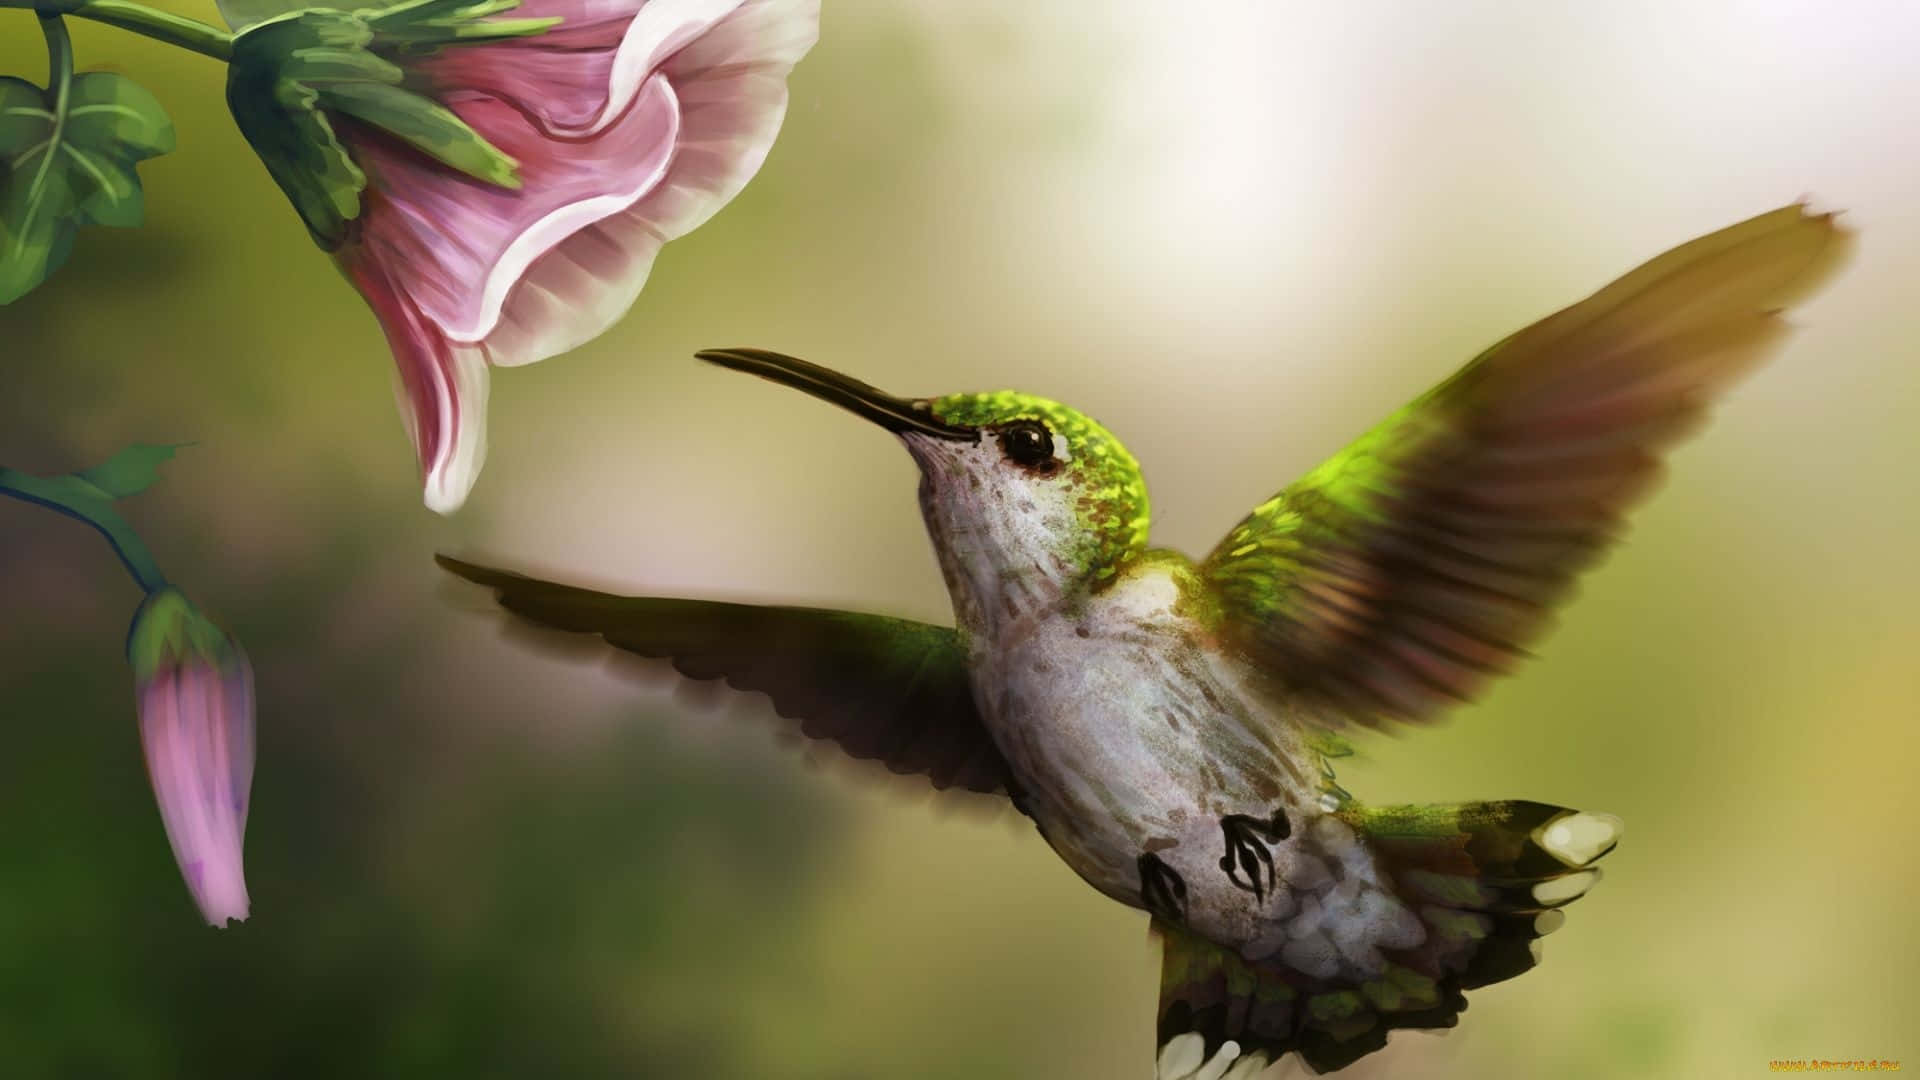 Erhaltensie Einen Genaueren Blick Auf Die Schönheit Der Natur Mit Diesem Wunderschönen Bild Eines Kolibris.